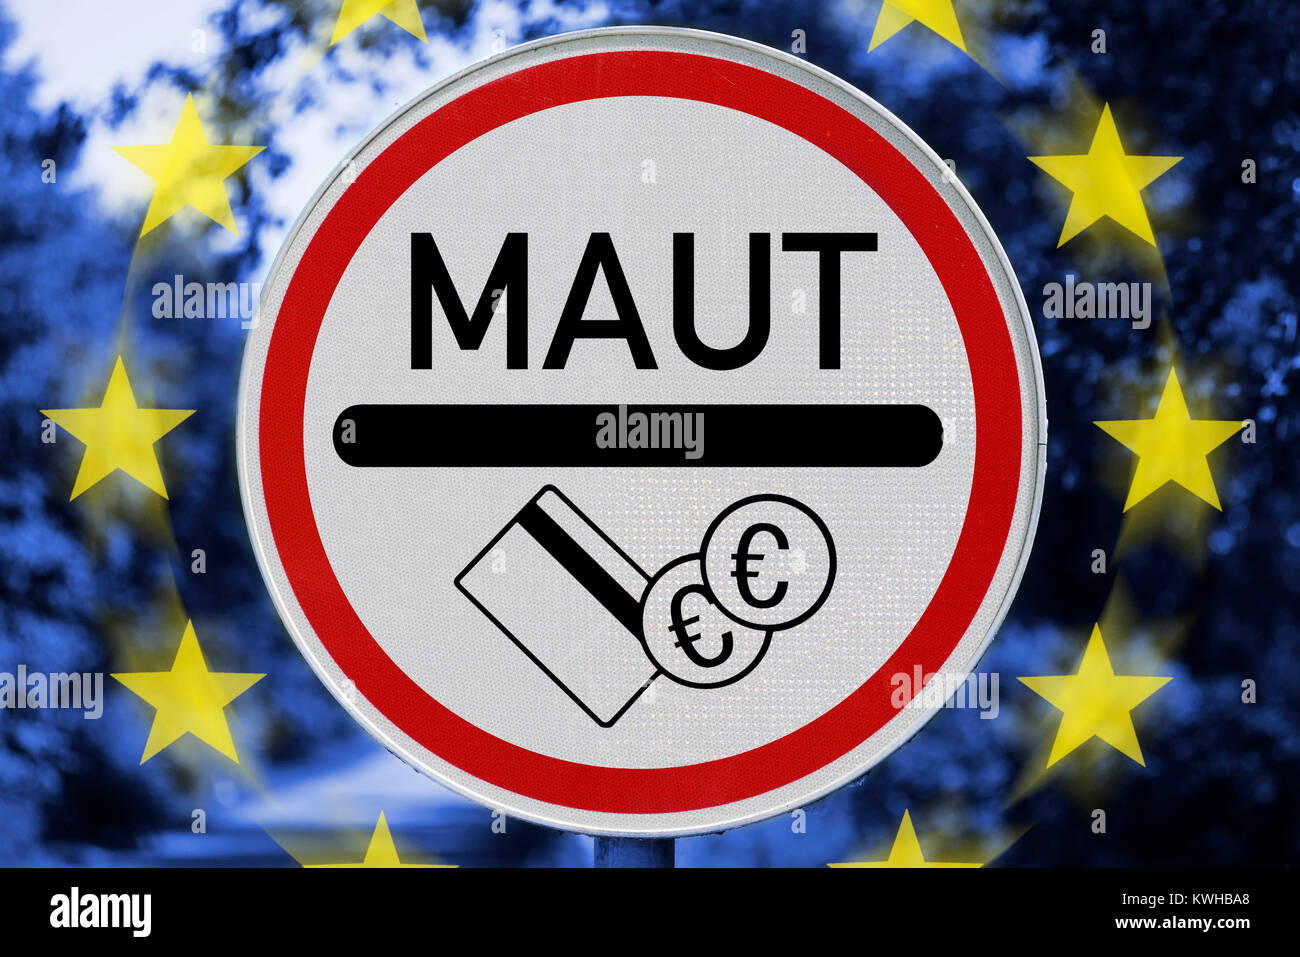 Toll sign and EU stars, the EU stops German passenger car toll, Maut-Schild und EU-Sterne, EU stoppt deutsche PKW-Maut Stock Photo